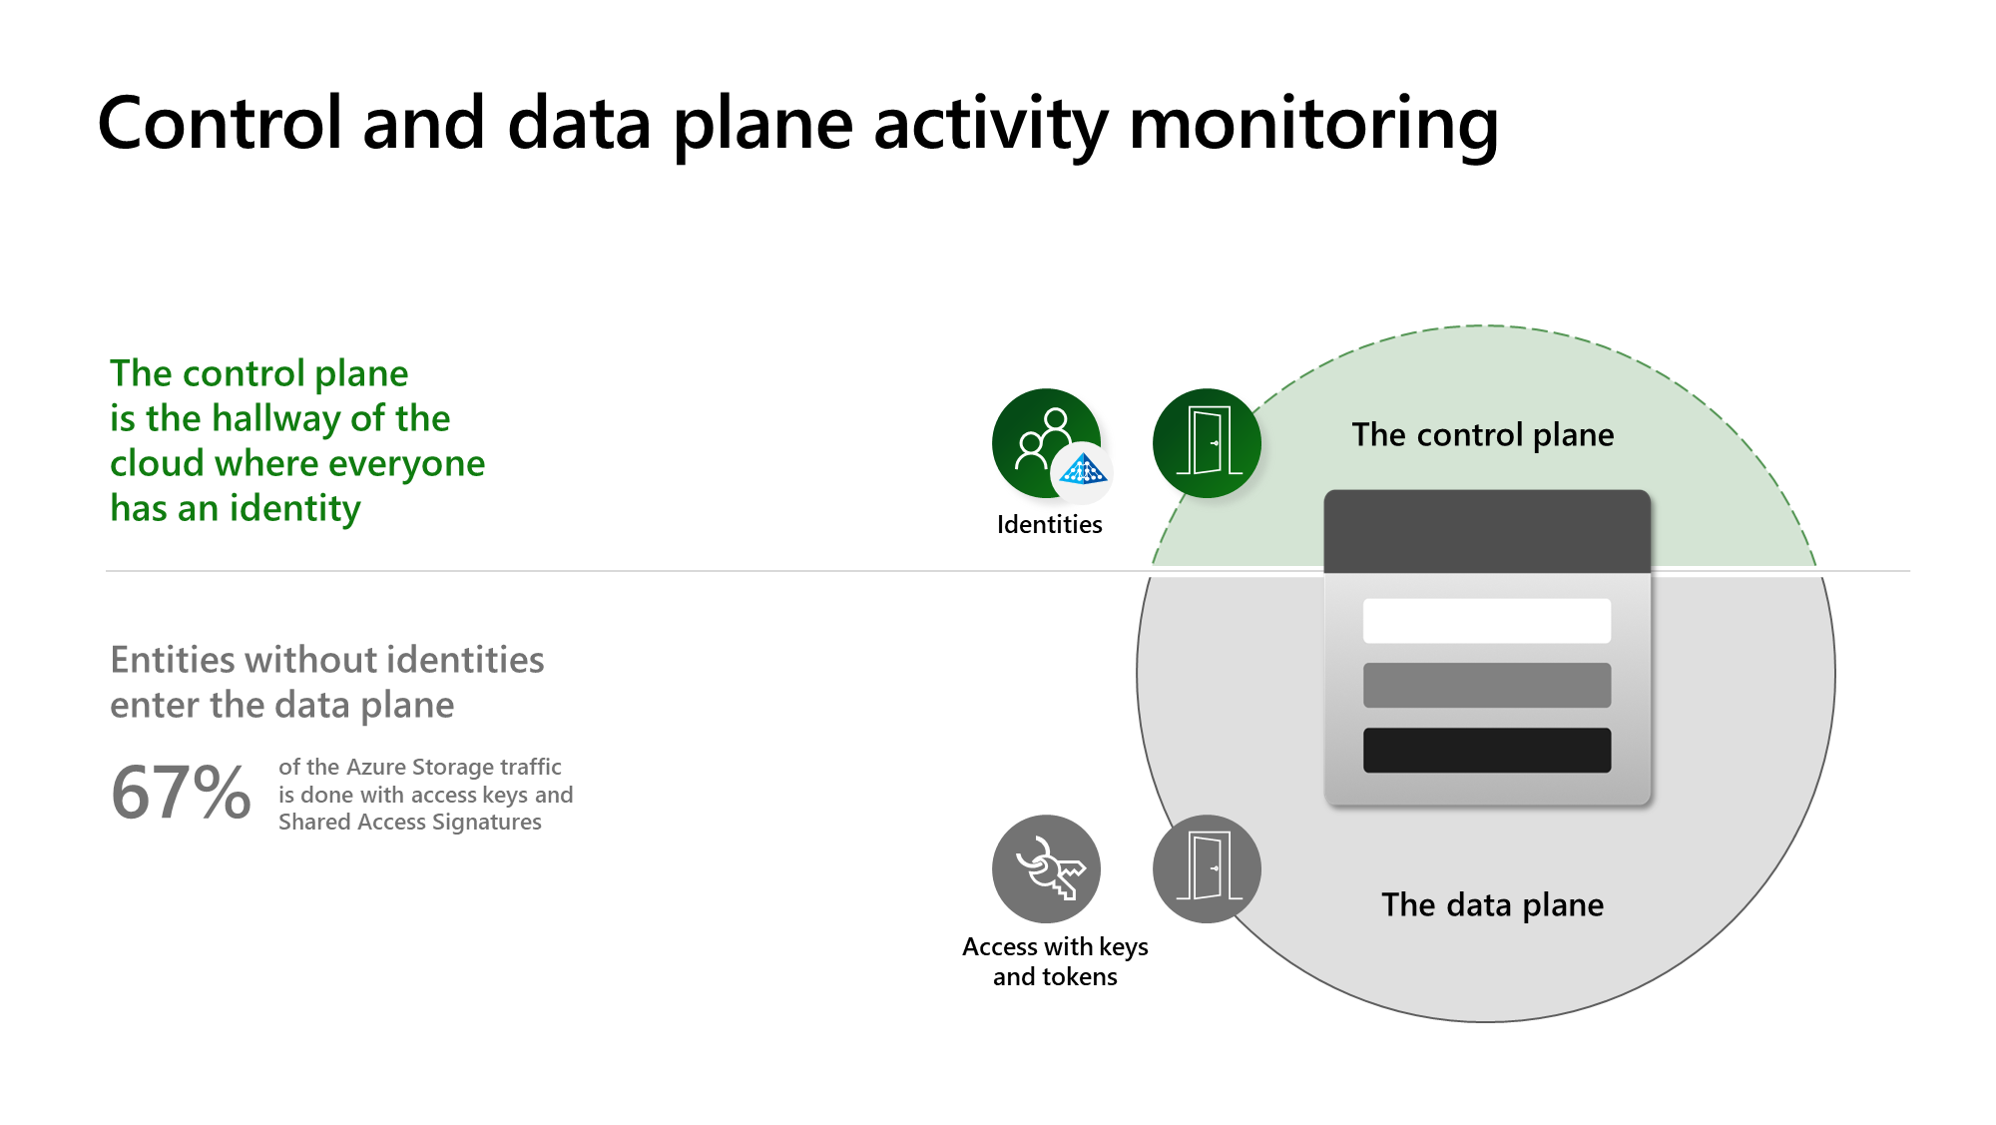 رسم تخطيطي يوضح كيفية تحديد مراقبة النشاط للتهديدات التي تتعرض لها بياناتك.